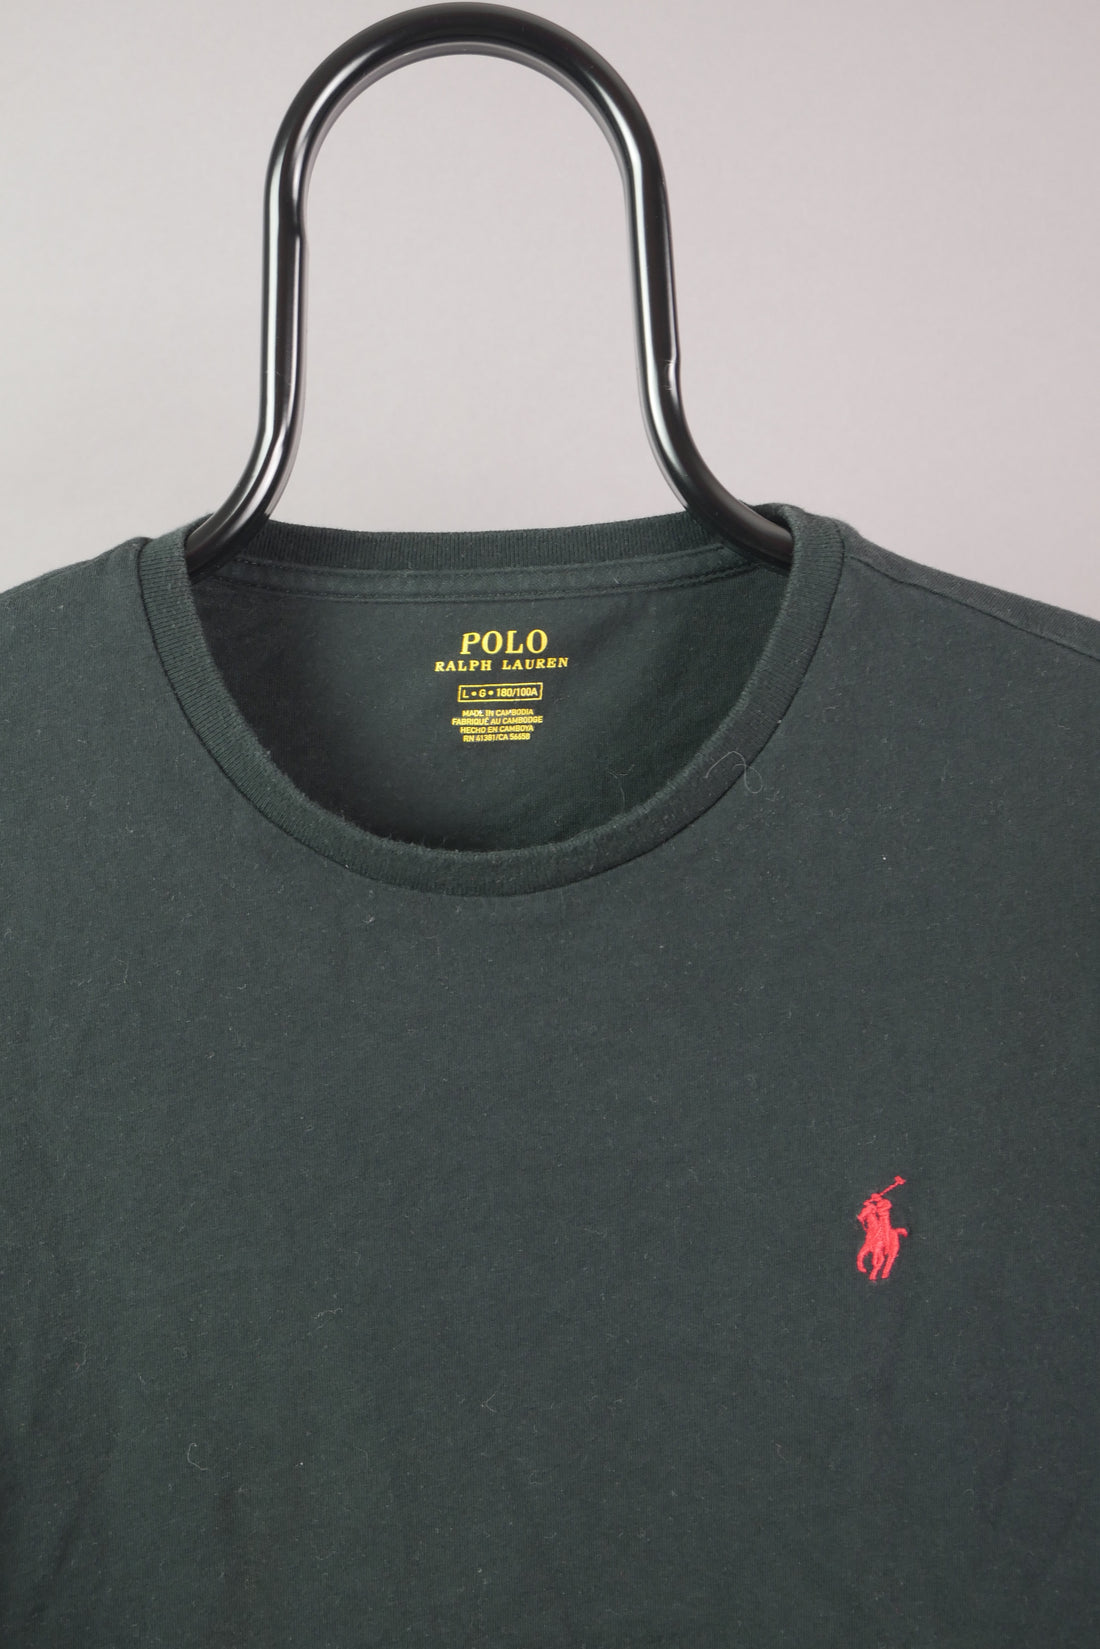 The Polo Ralph Lauren T-Shirt (L)